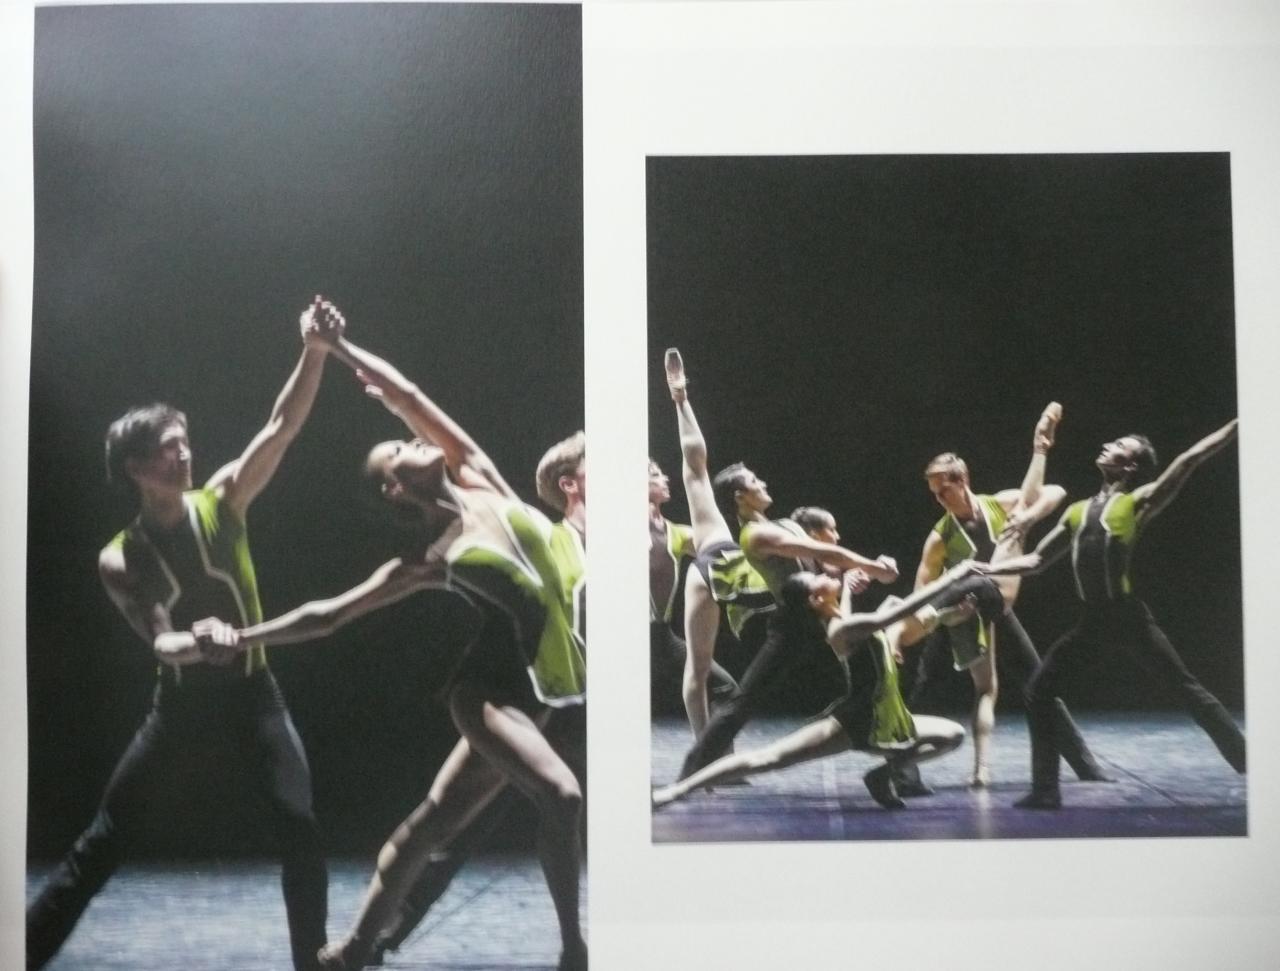 В Казахстане вышла книга азербайджанского музыковеда о знаменитом театре "Астана балет"